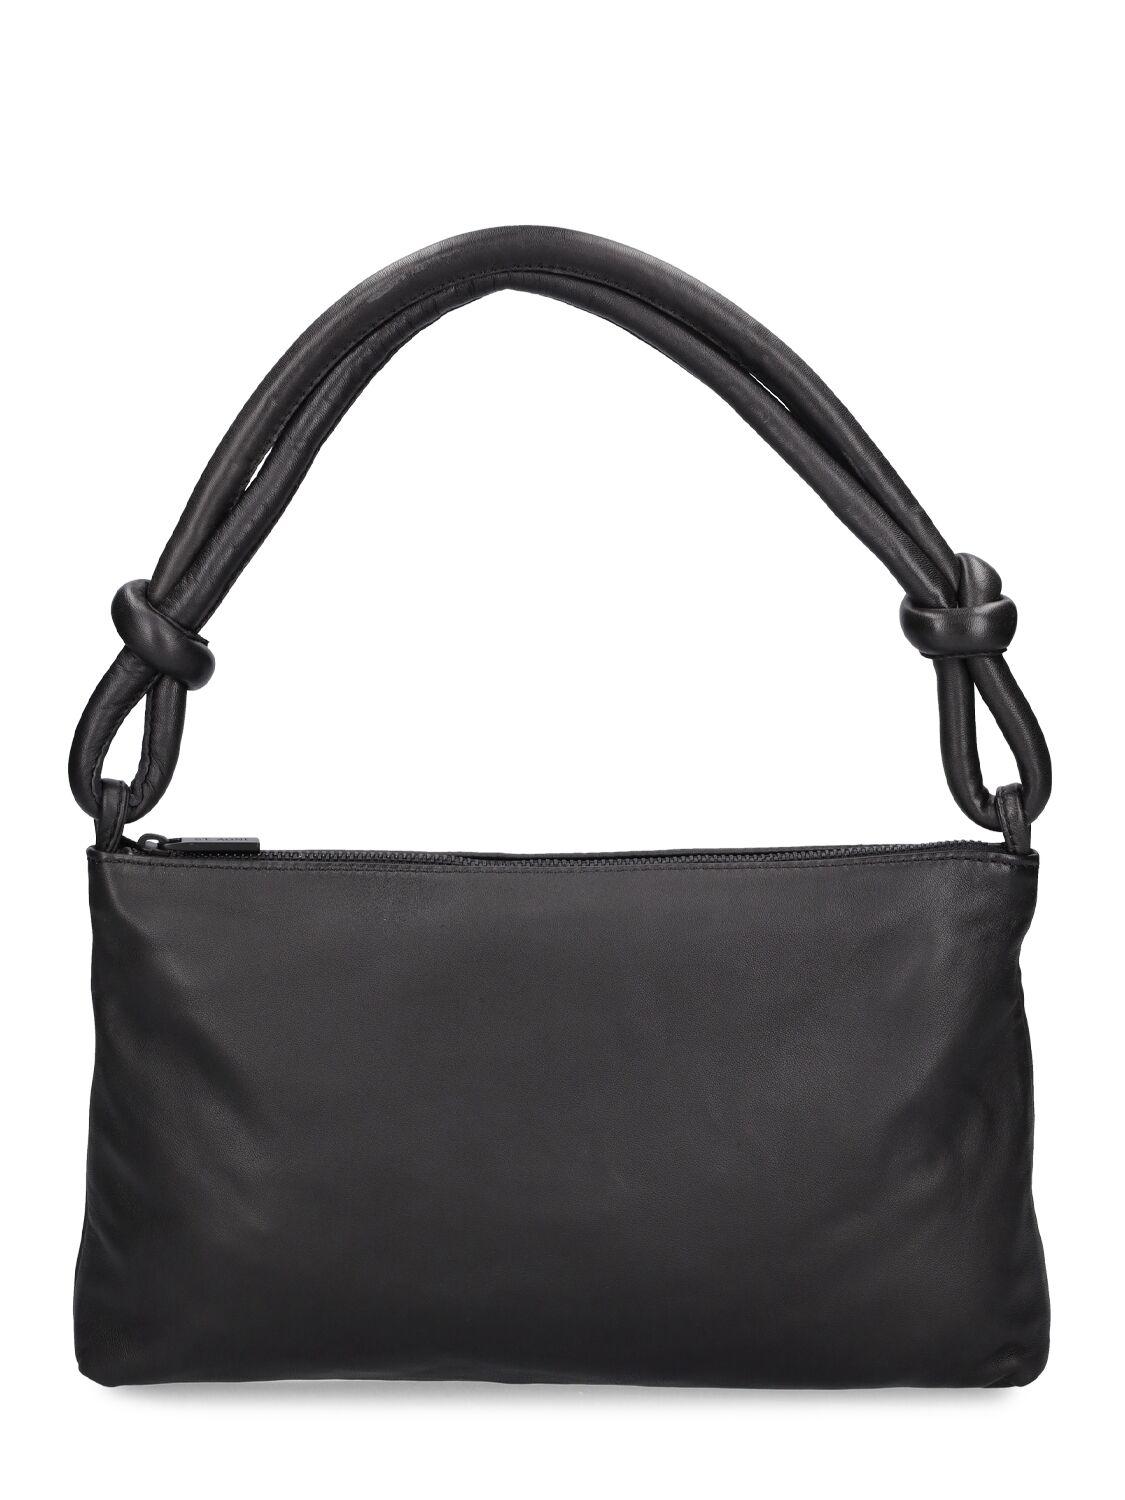 St.agni Knotted Leather Shoulder Bag In Black